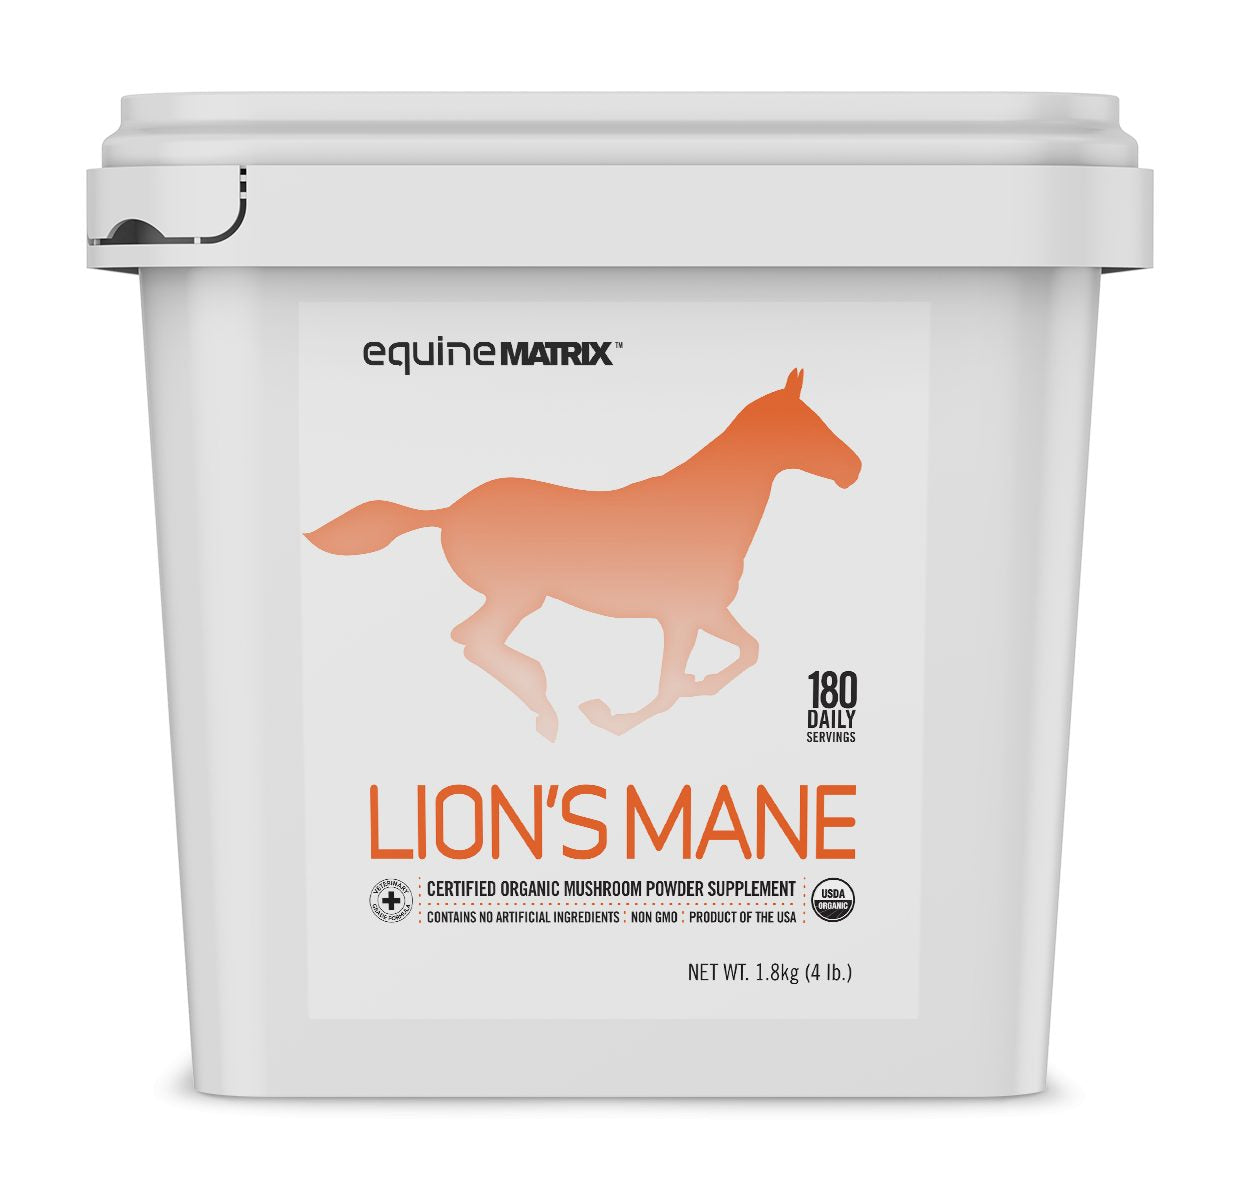 Lion's Mane Mushroom Supplement for Horses